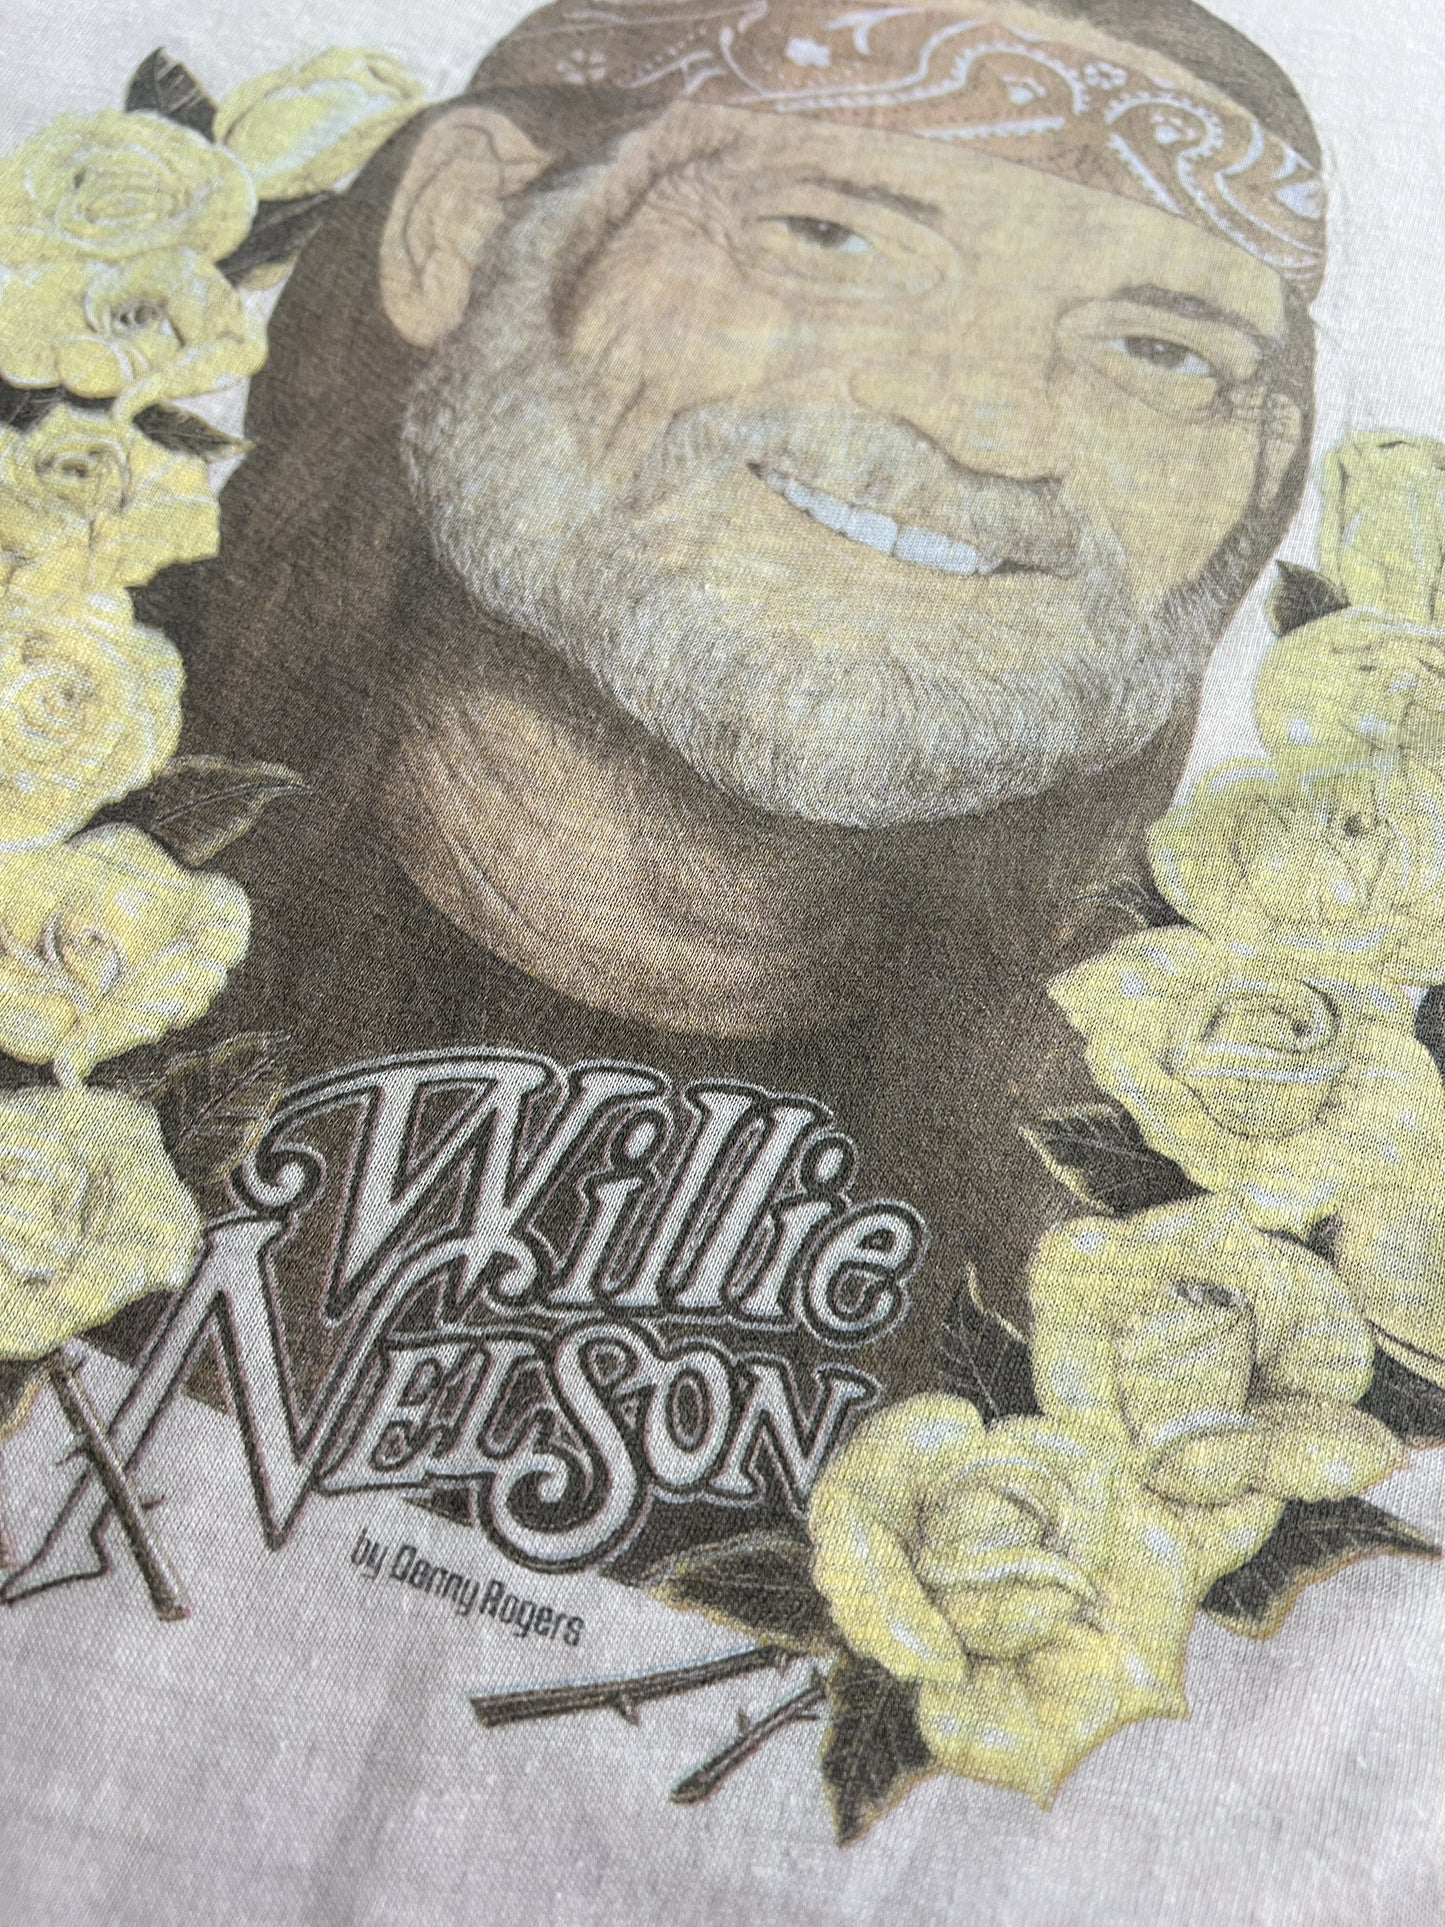 '83 Willie Nelson 'World Tour' Ringer [M]